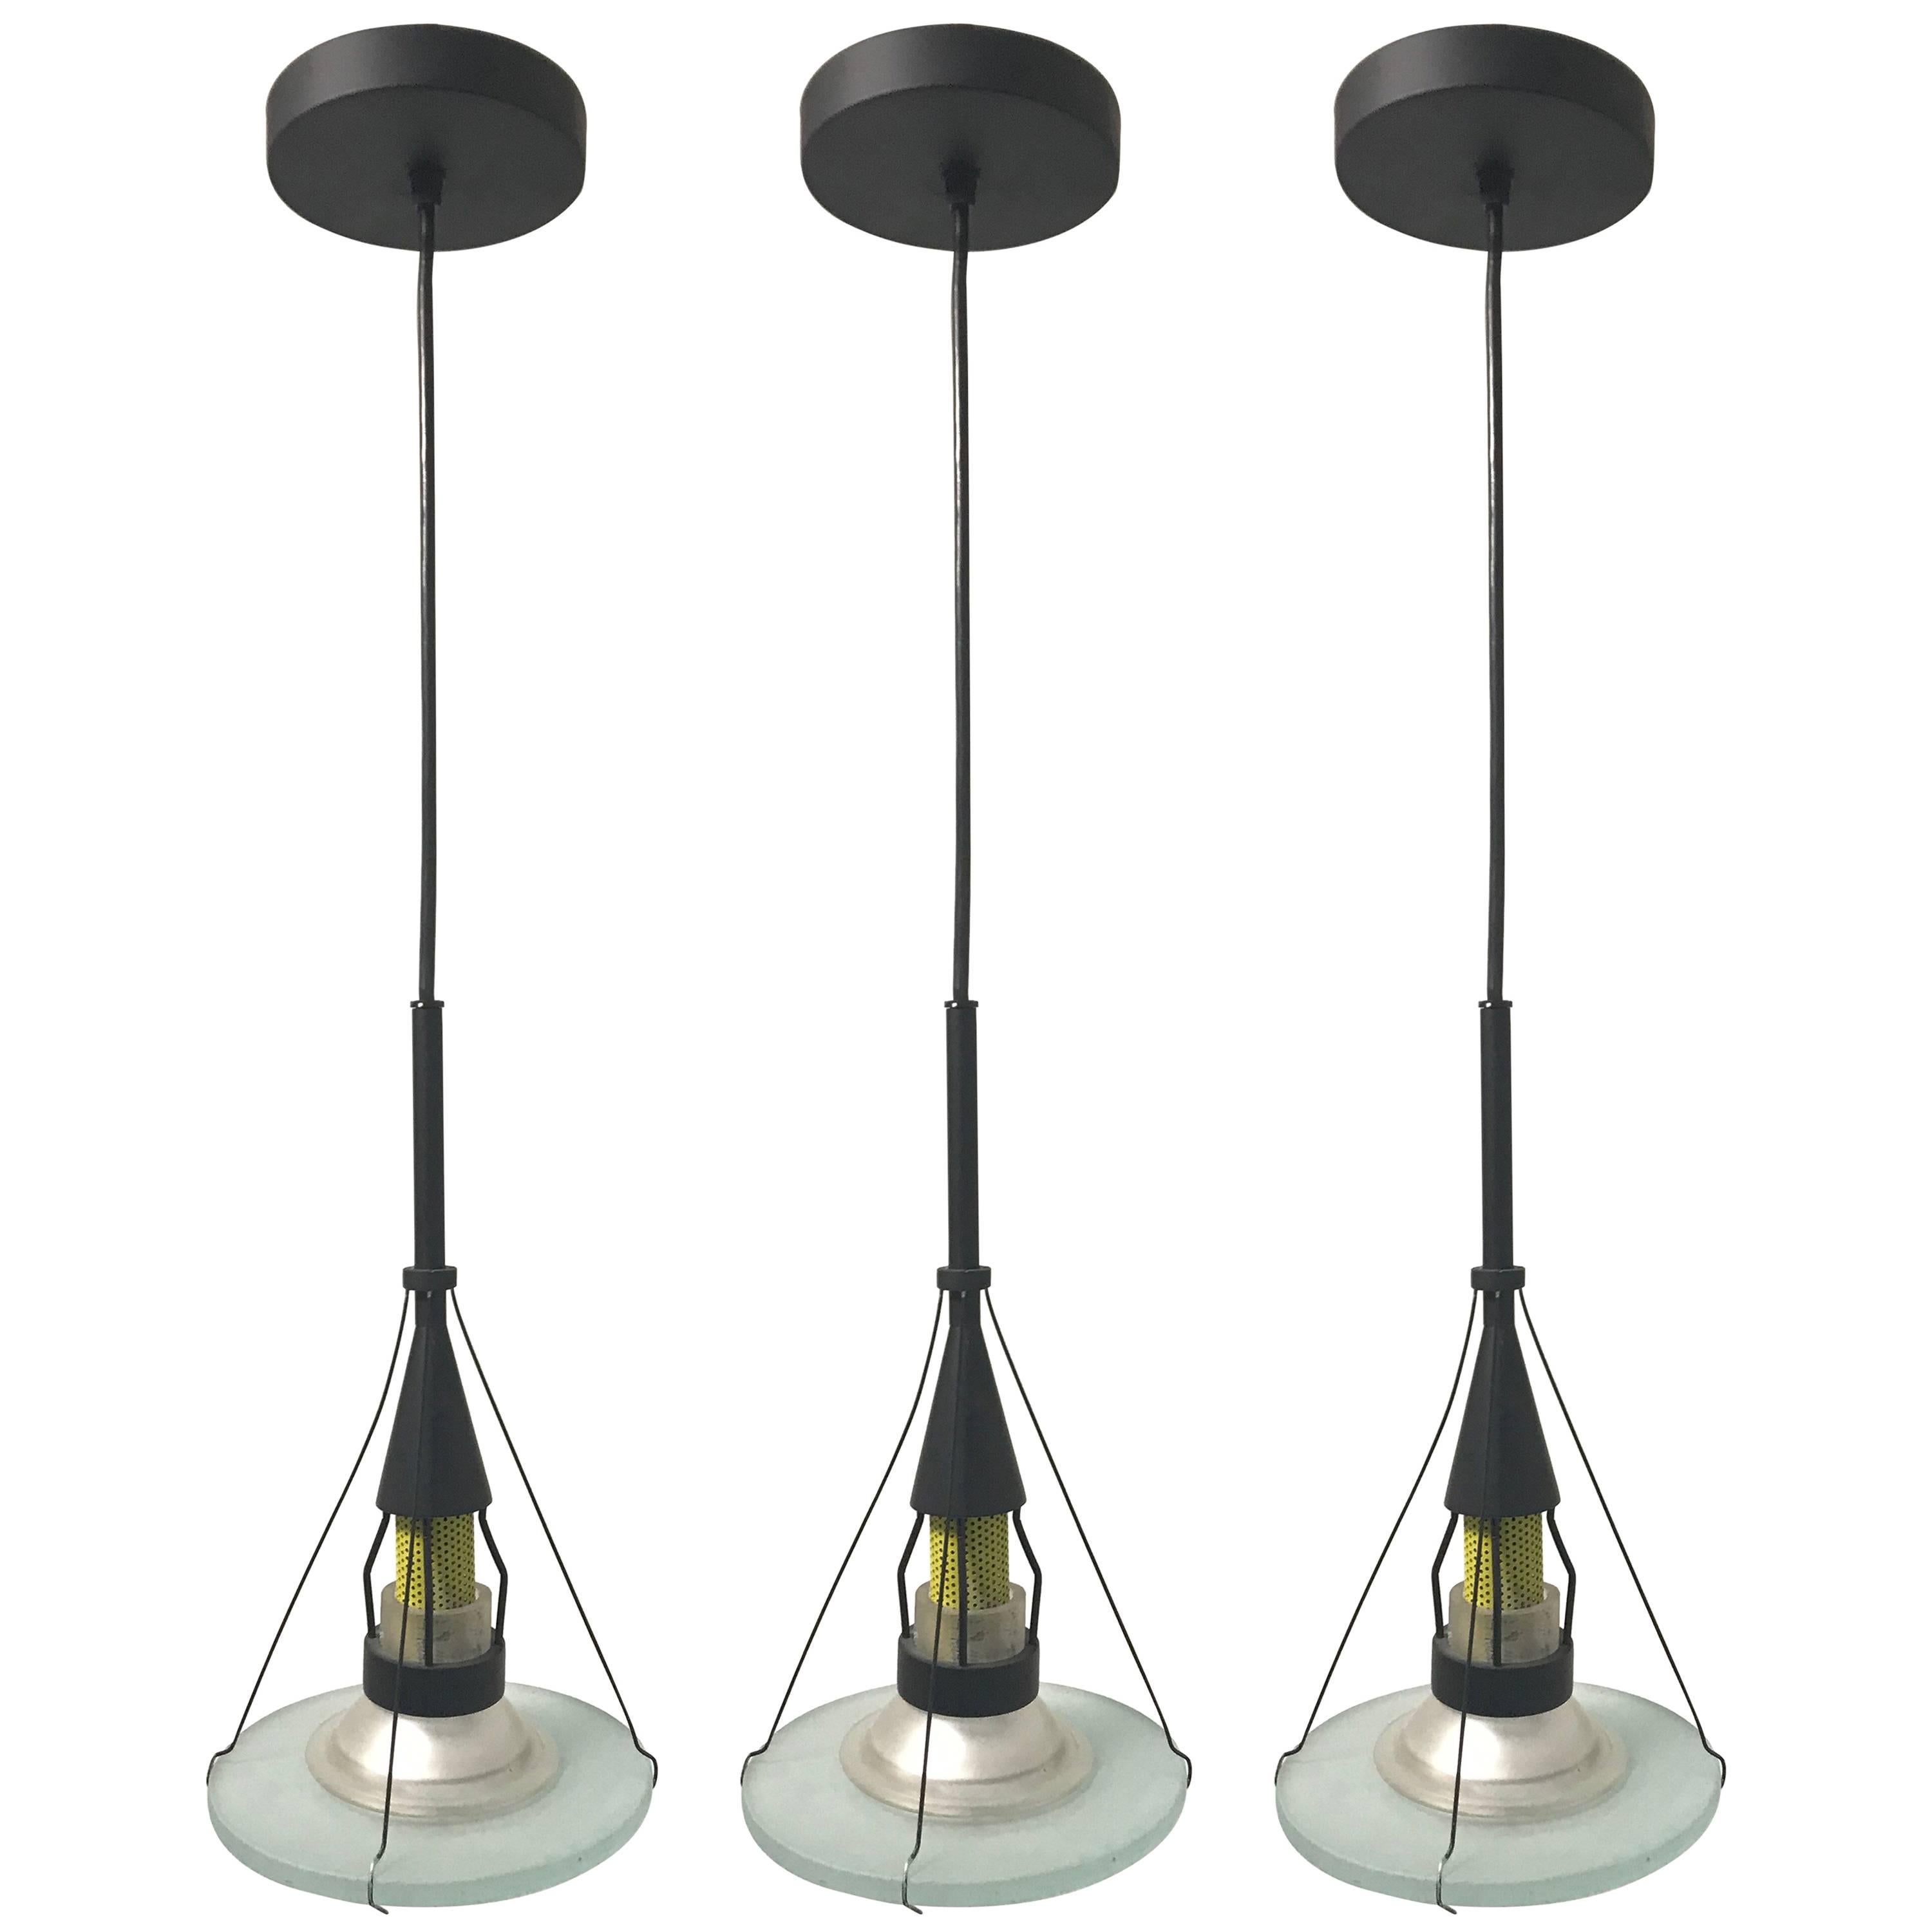 Postmodern Pendant Lights Designed by Robert Sonneman for George Kovacs